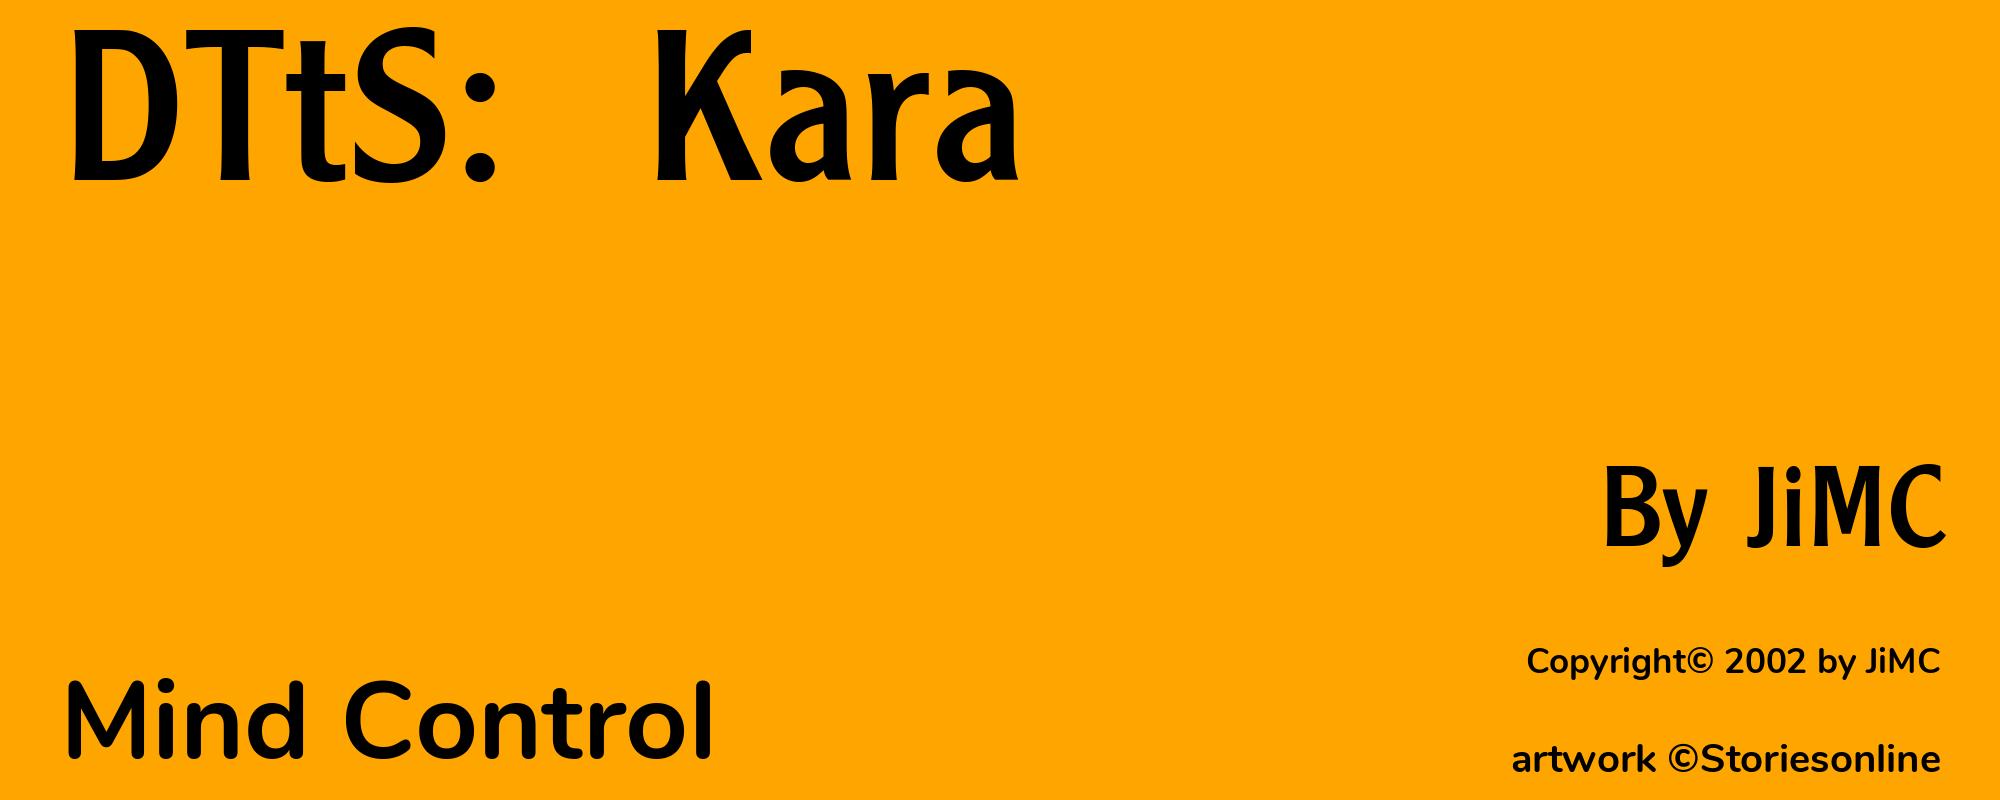 DTtS:  Kara - Cover